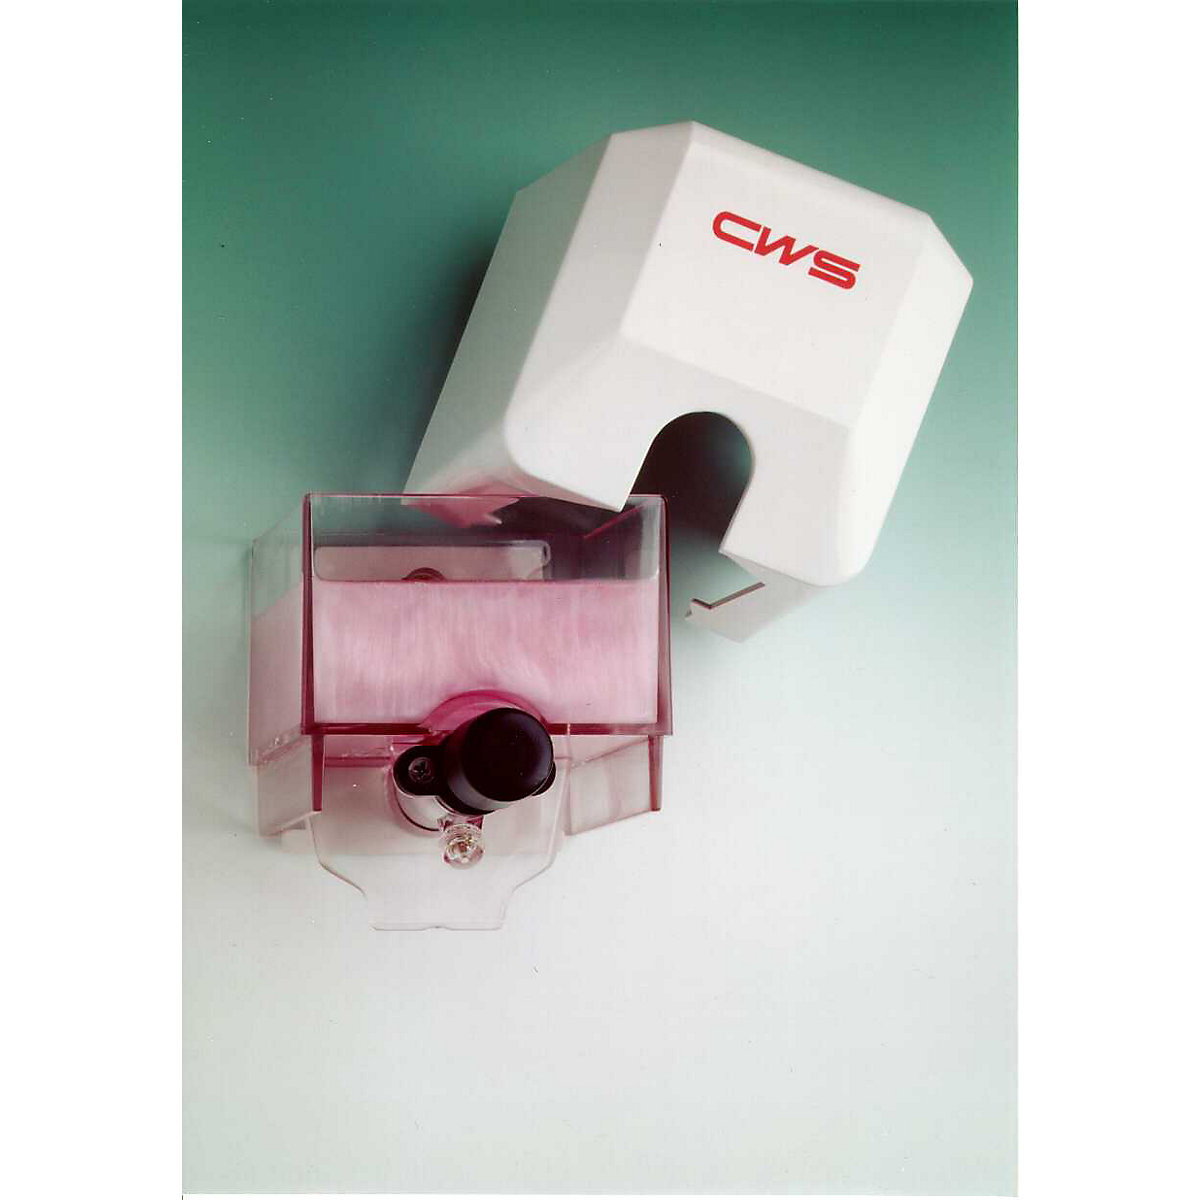 Shower gel and soap dispenser – CWS